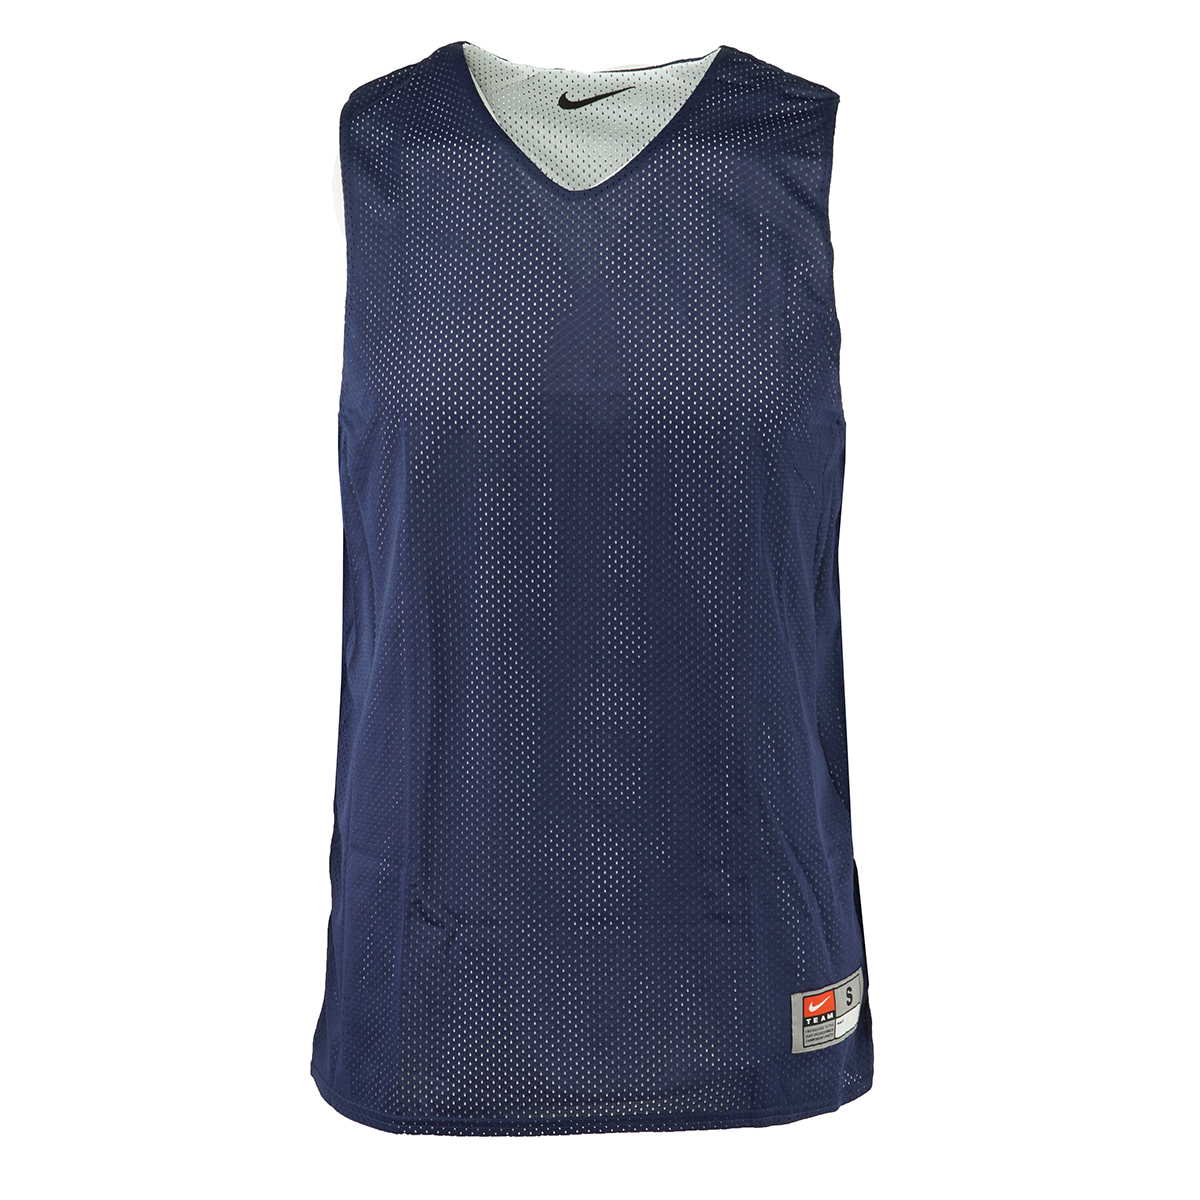 Nike Nike Men s Reversible Basketball Practice Jersey Walmart